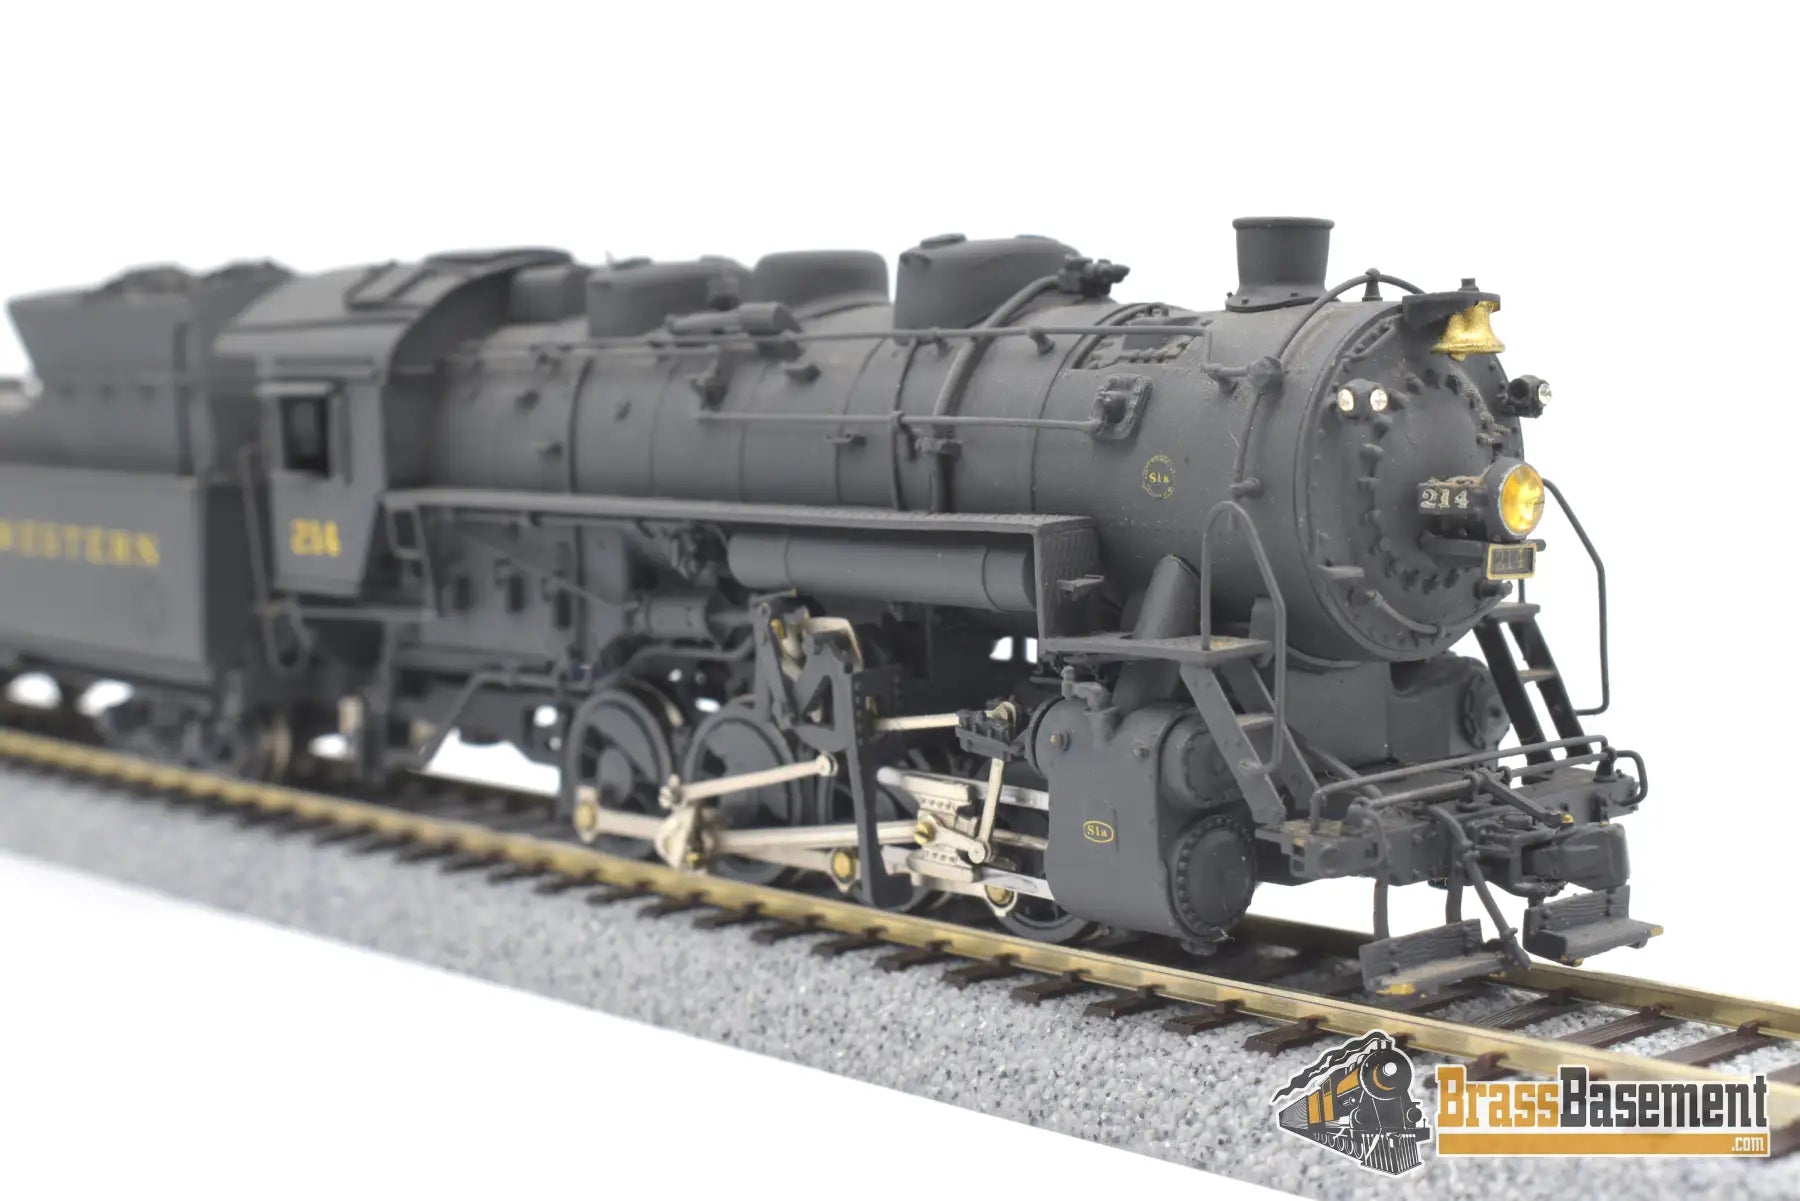 Ho Brass - Pfm Norfolk & Western N&W S - 1A 0 - 8 - 0 #214 Great Paint Samhongsa Steam